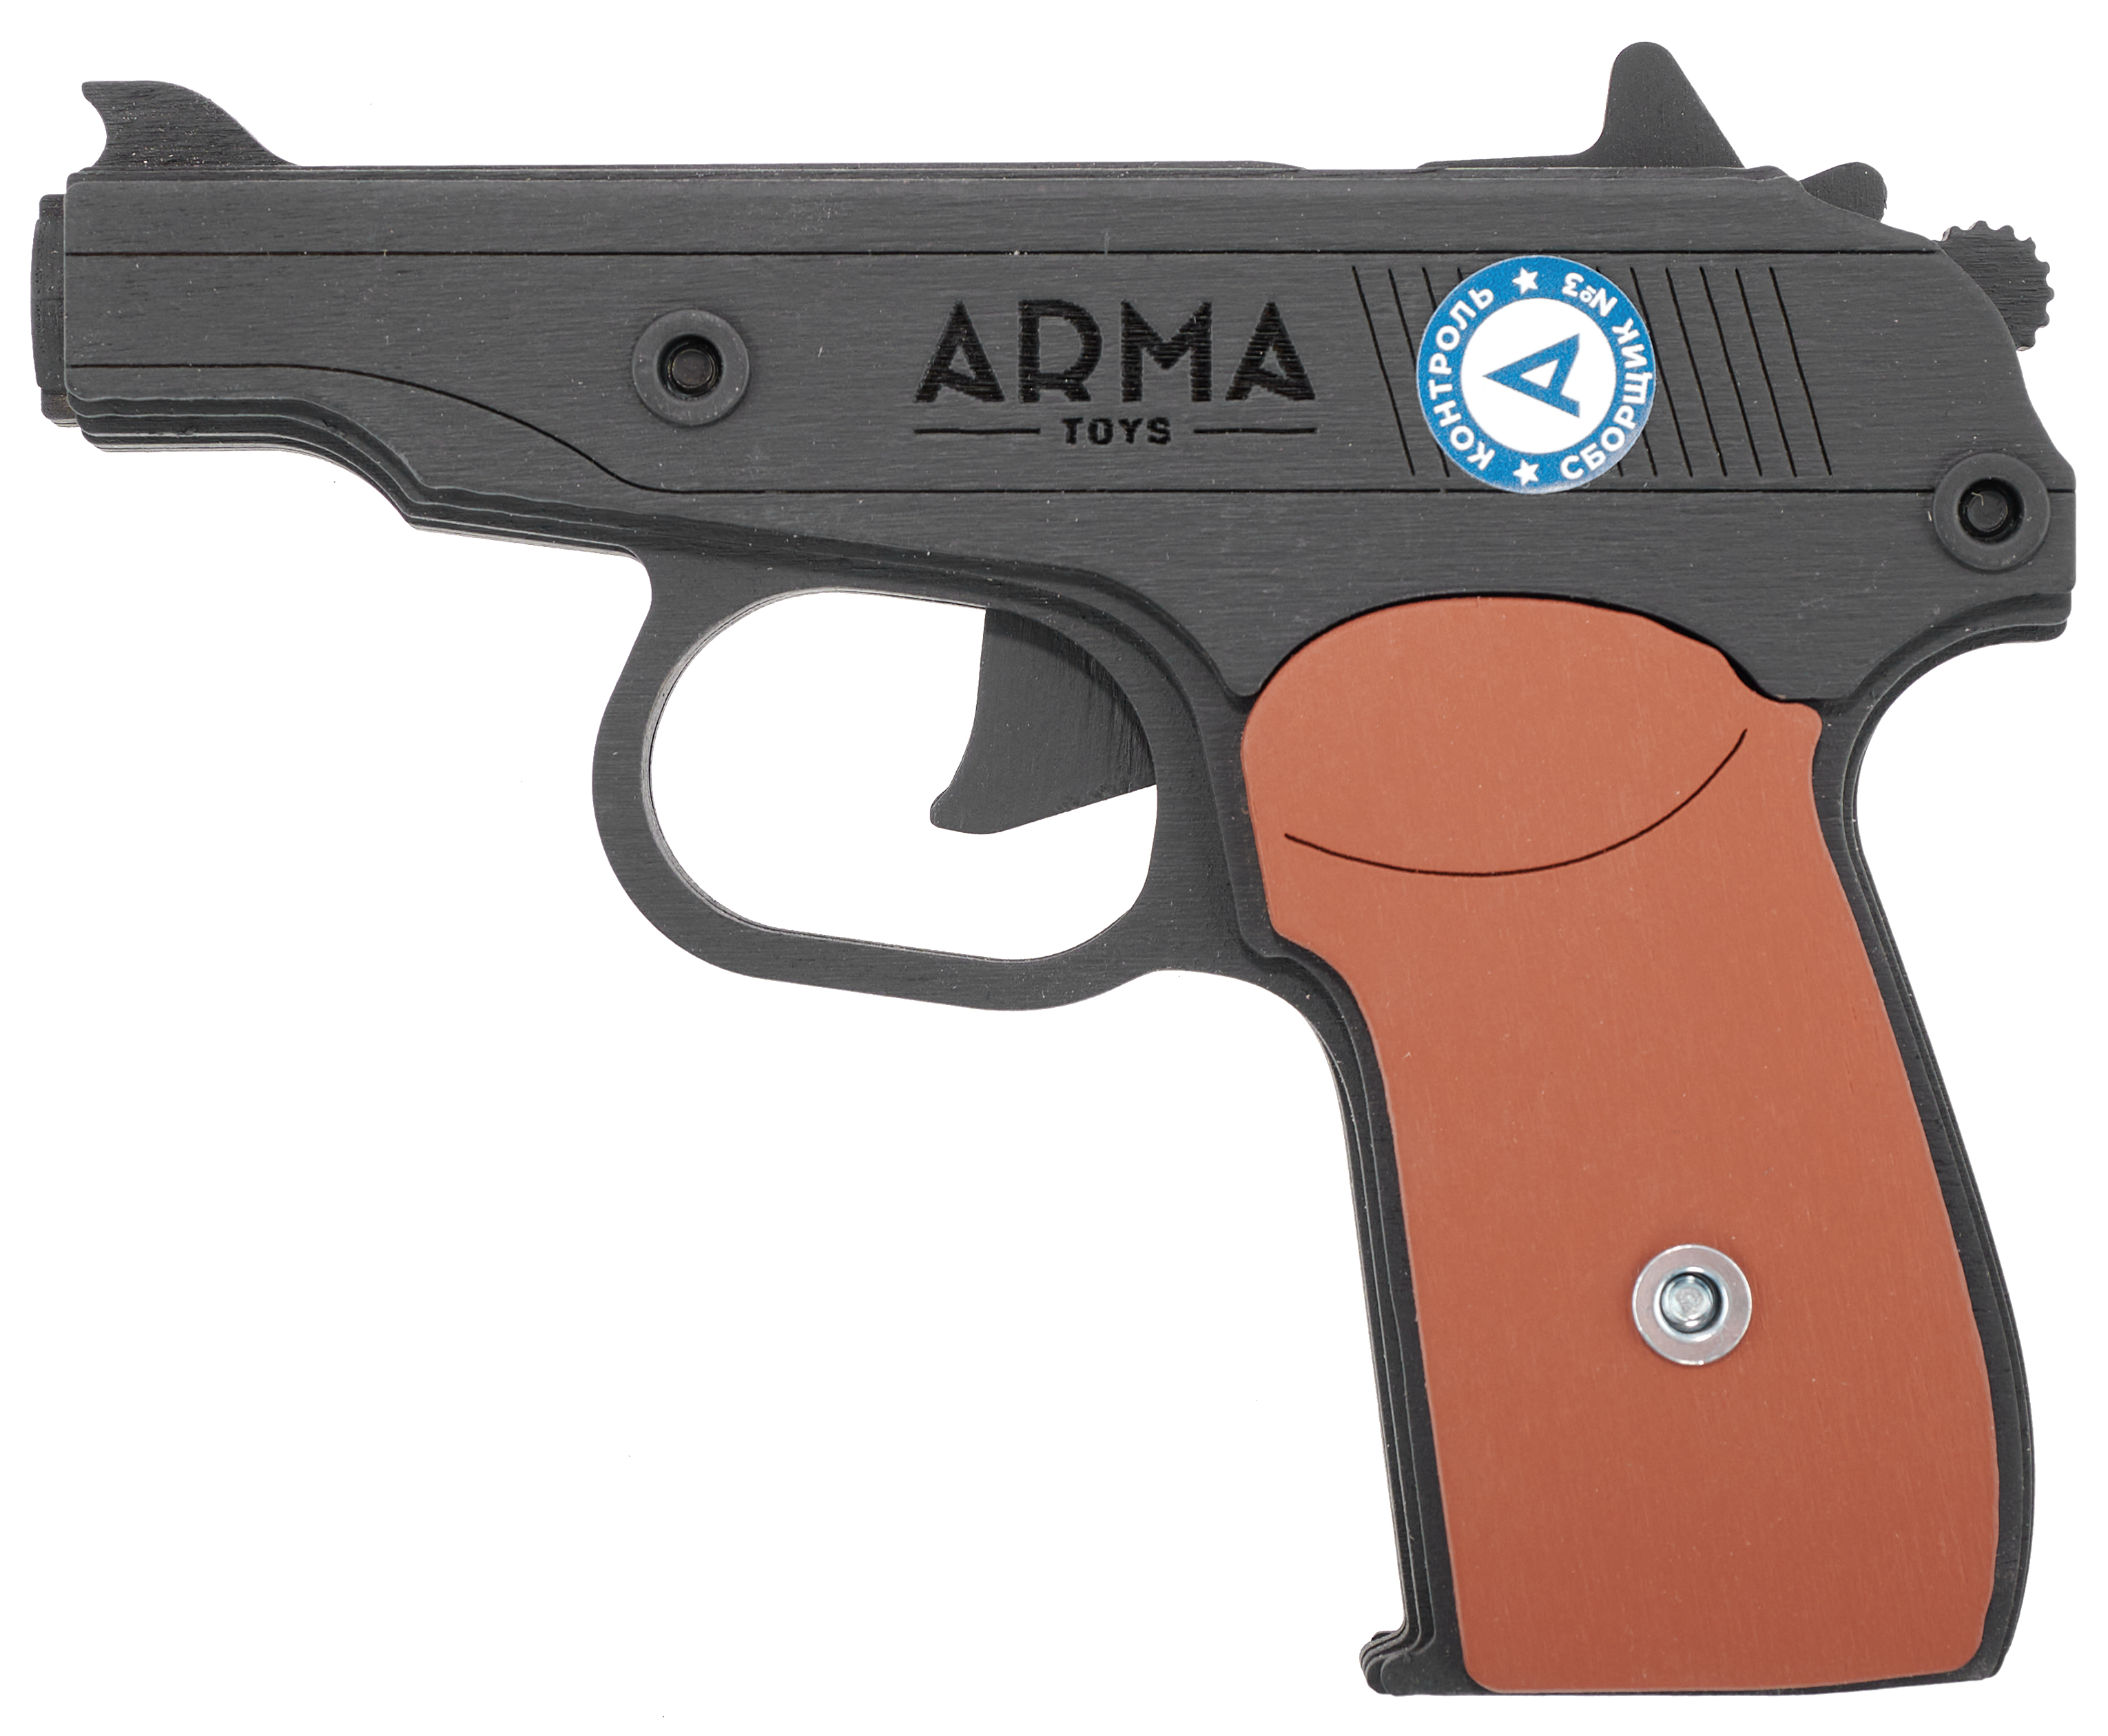 Резинкострел игрушечный Arma toys пистолет Макарова макет, ПМ, окрашенный, AT012K резинкострел arma toys пистолет тт тульский токарева